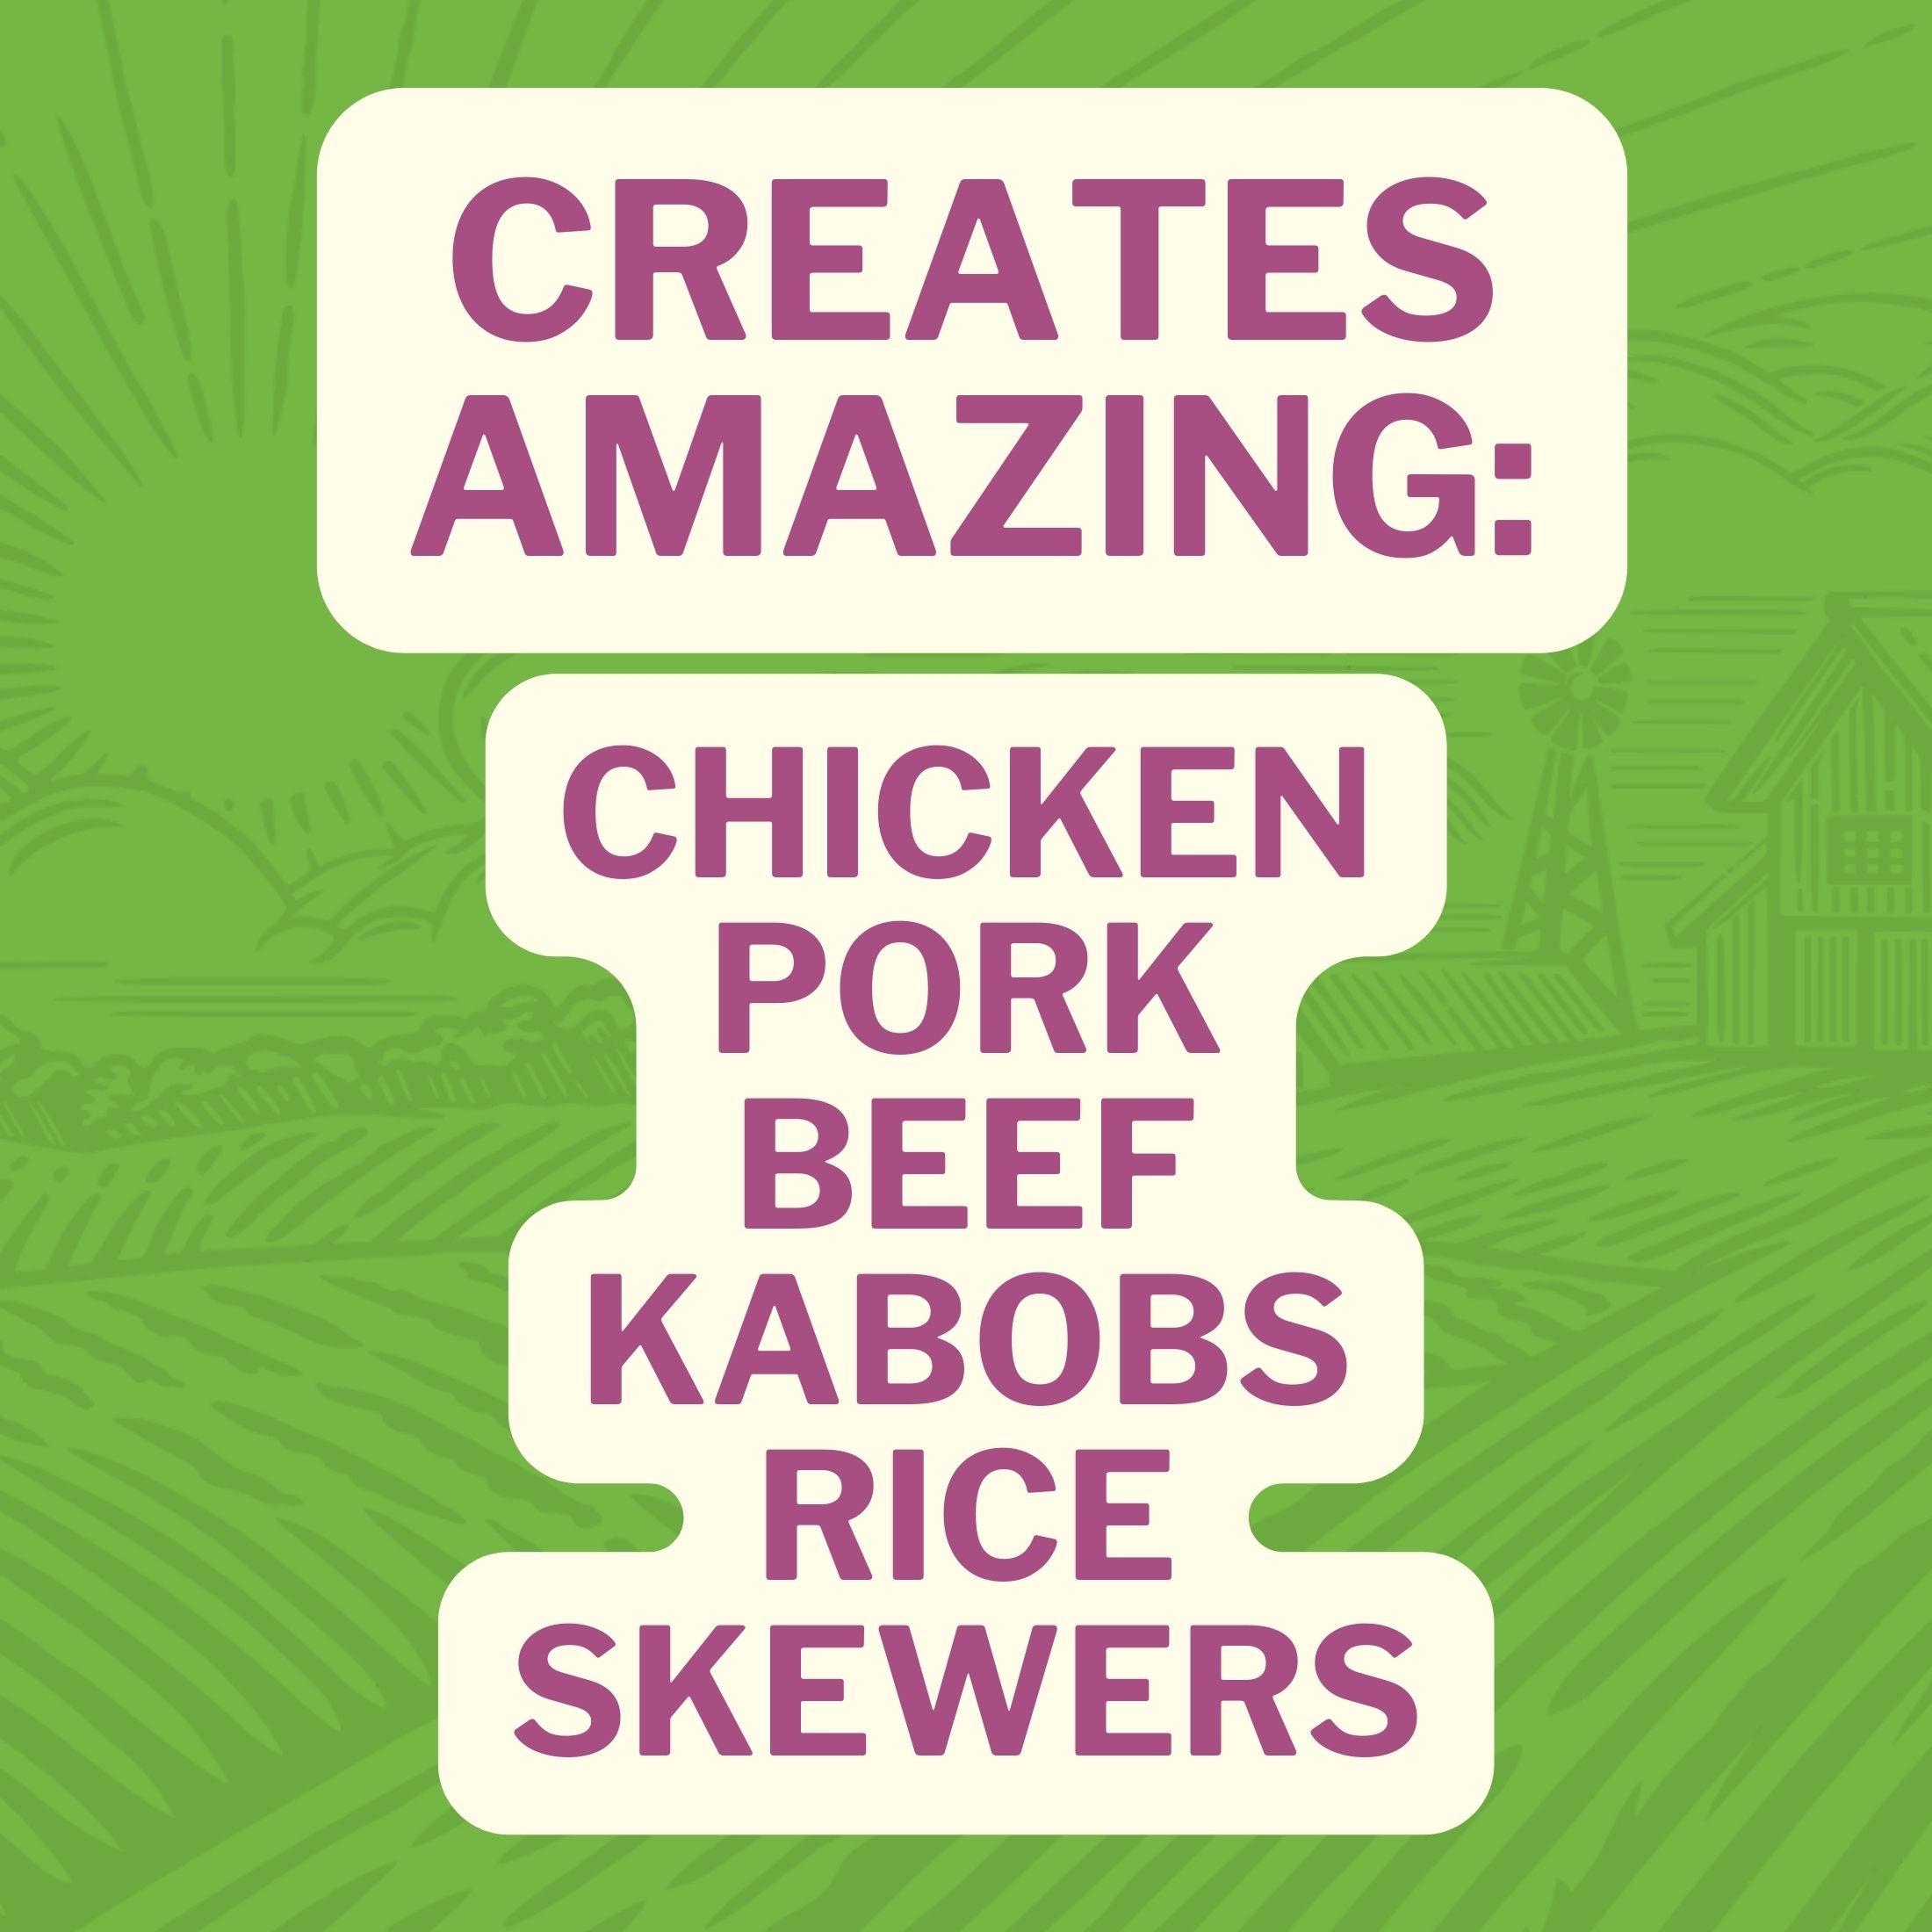 Creates Amazing: Chicken, Pork, Beef, Kabobs, Rice, Skewers